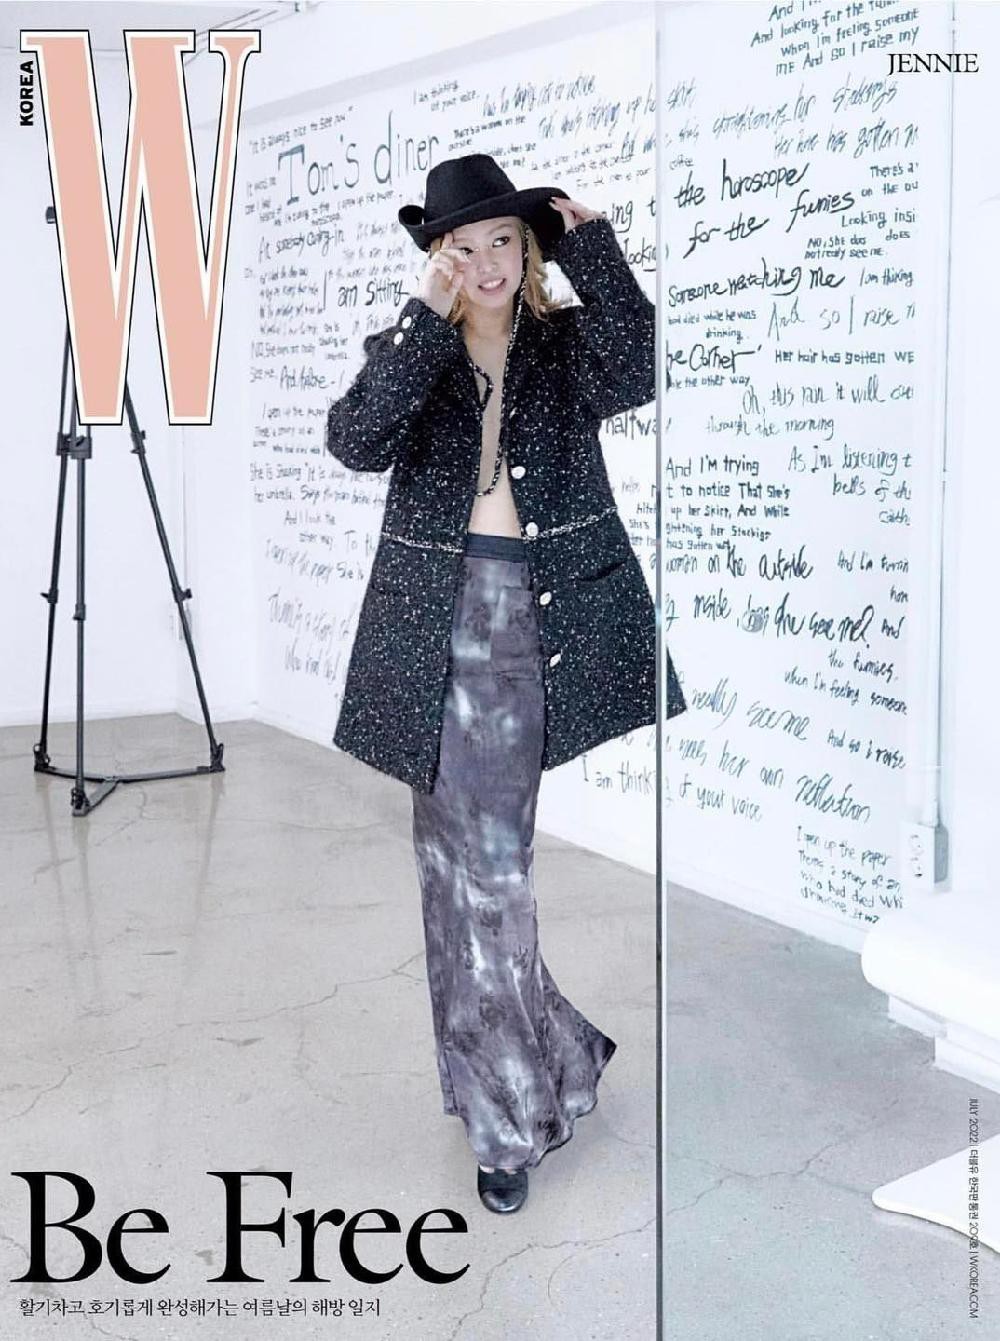 Nữ hoàng quảng cáo Jennie hợp hơn với thời trang hay mỹ phẩm  Phong cách  sao  Việt Giải Trí